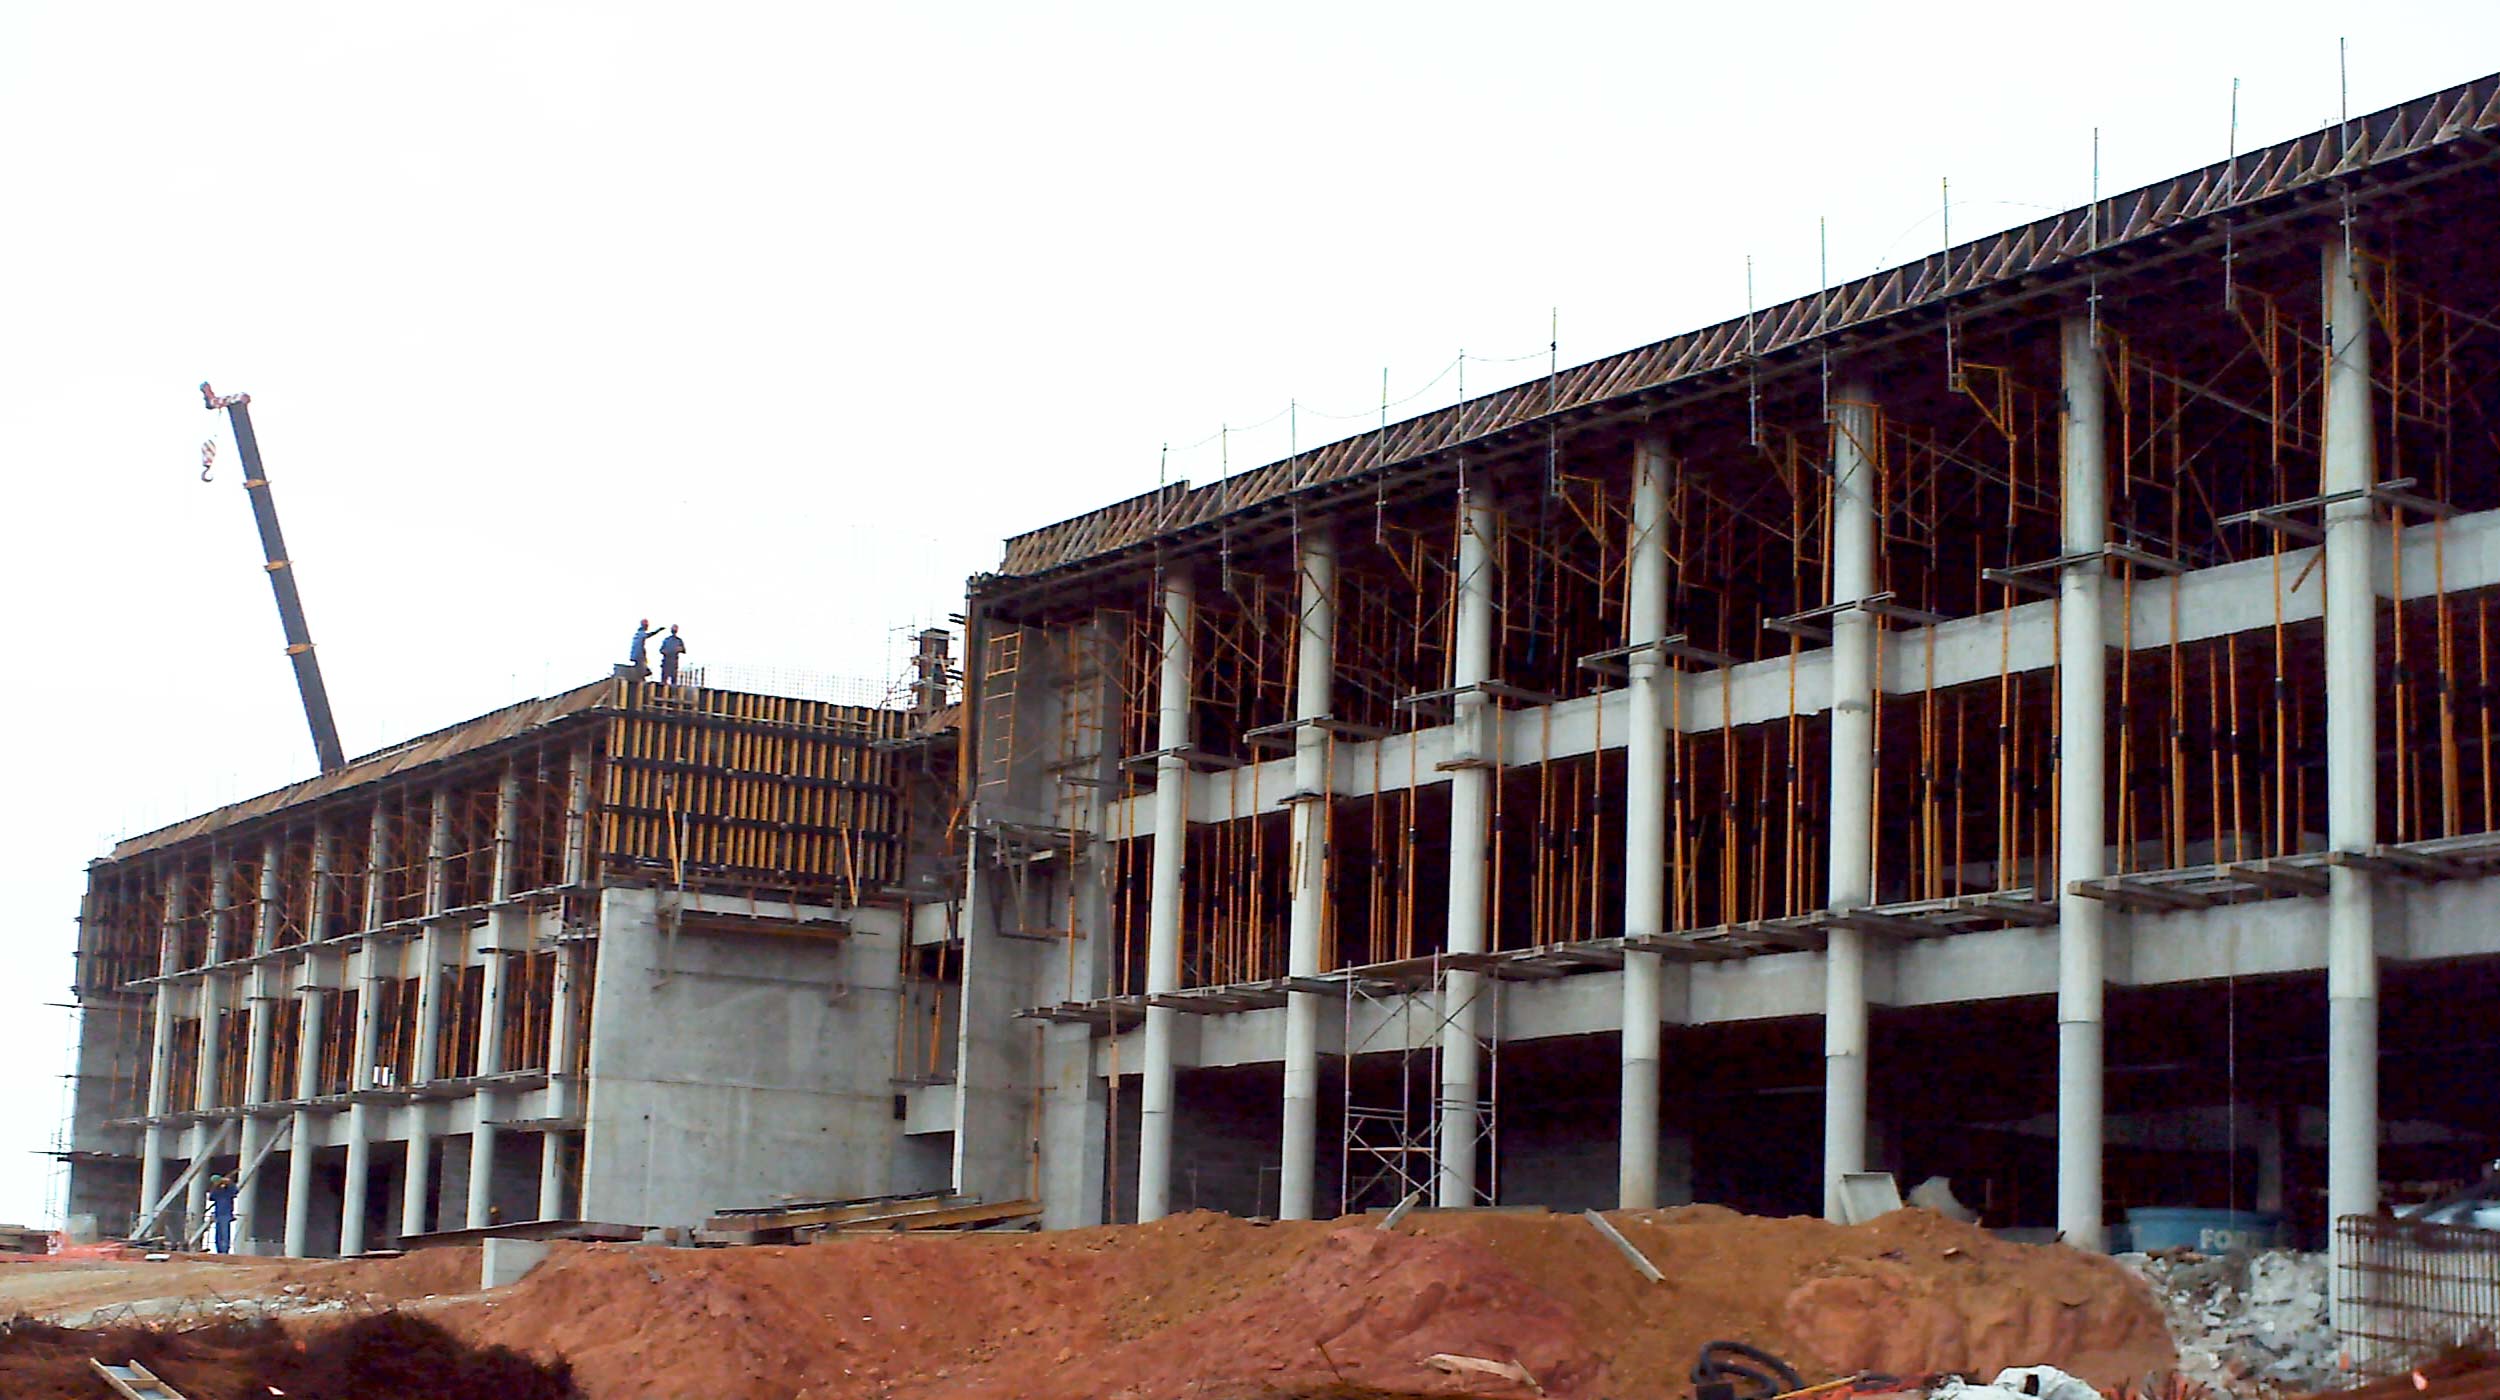 Nowa siedziba firmy Schlumberger w Brazylii wyróżnia się z otoczenia imponującą bryłą o powierzchni 2.500 m² i ścianami o wysokości 16 m, wykonanymi w technologii betonu licowego.